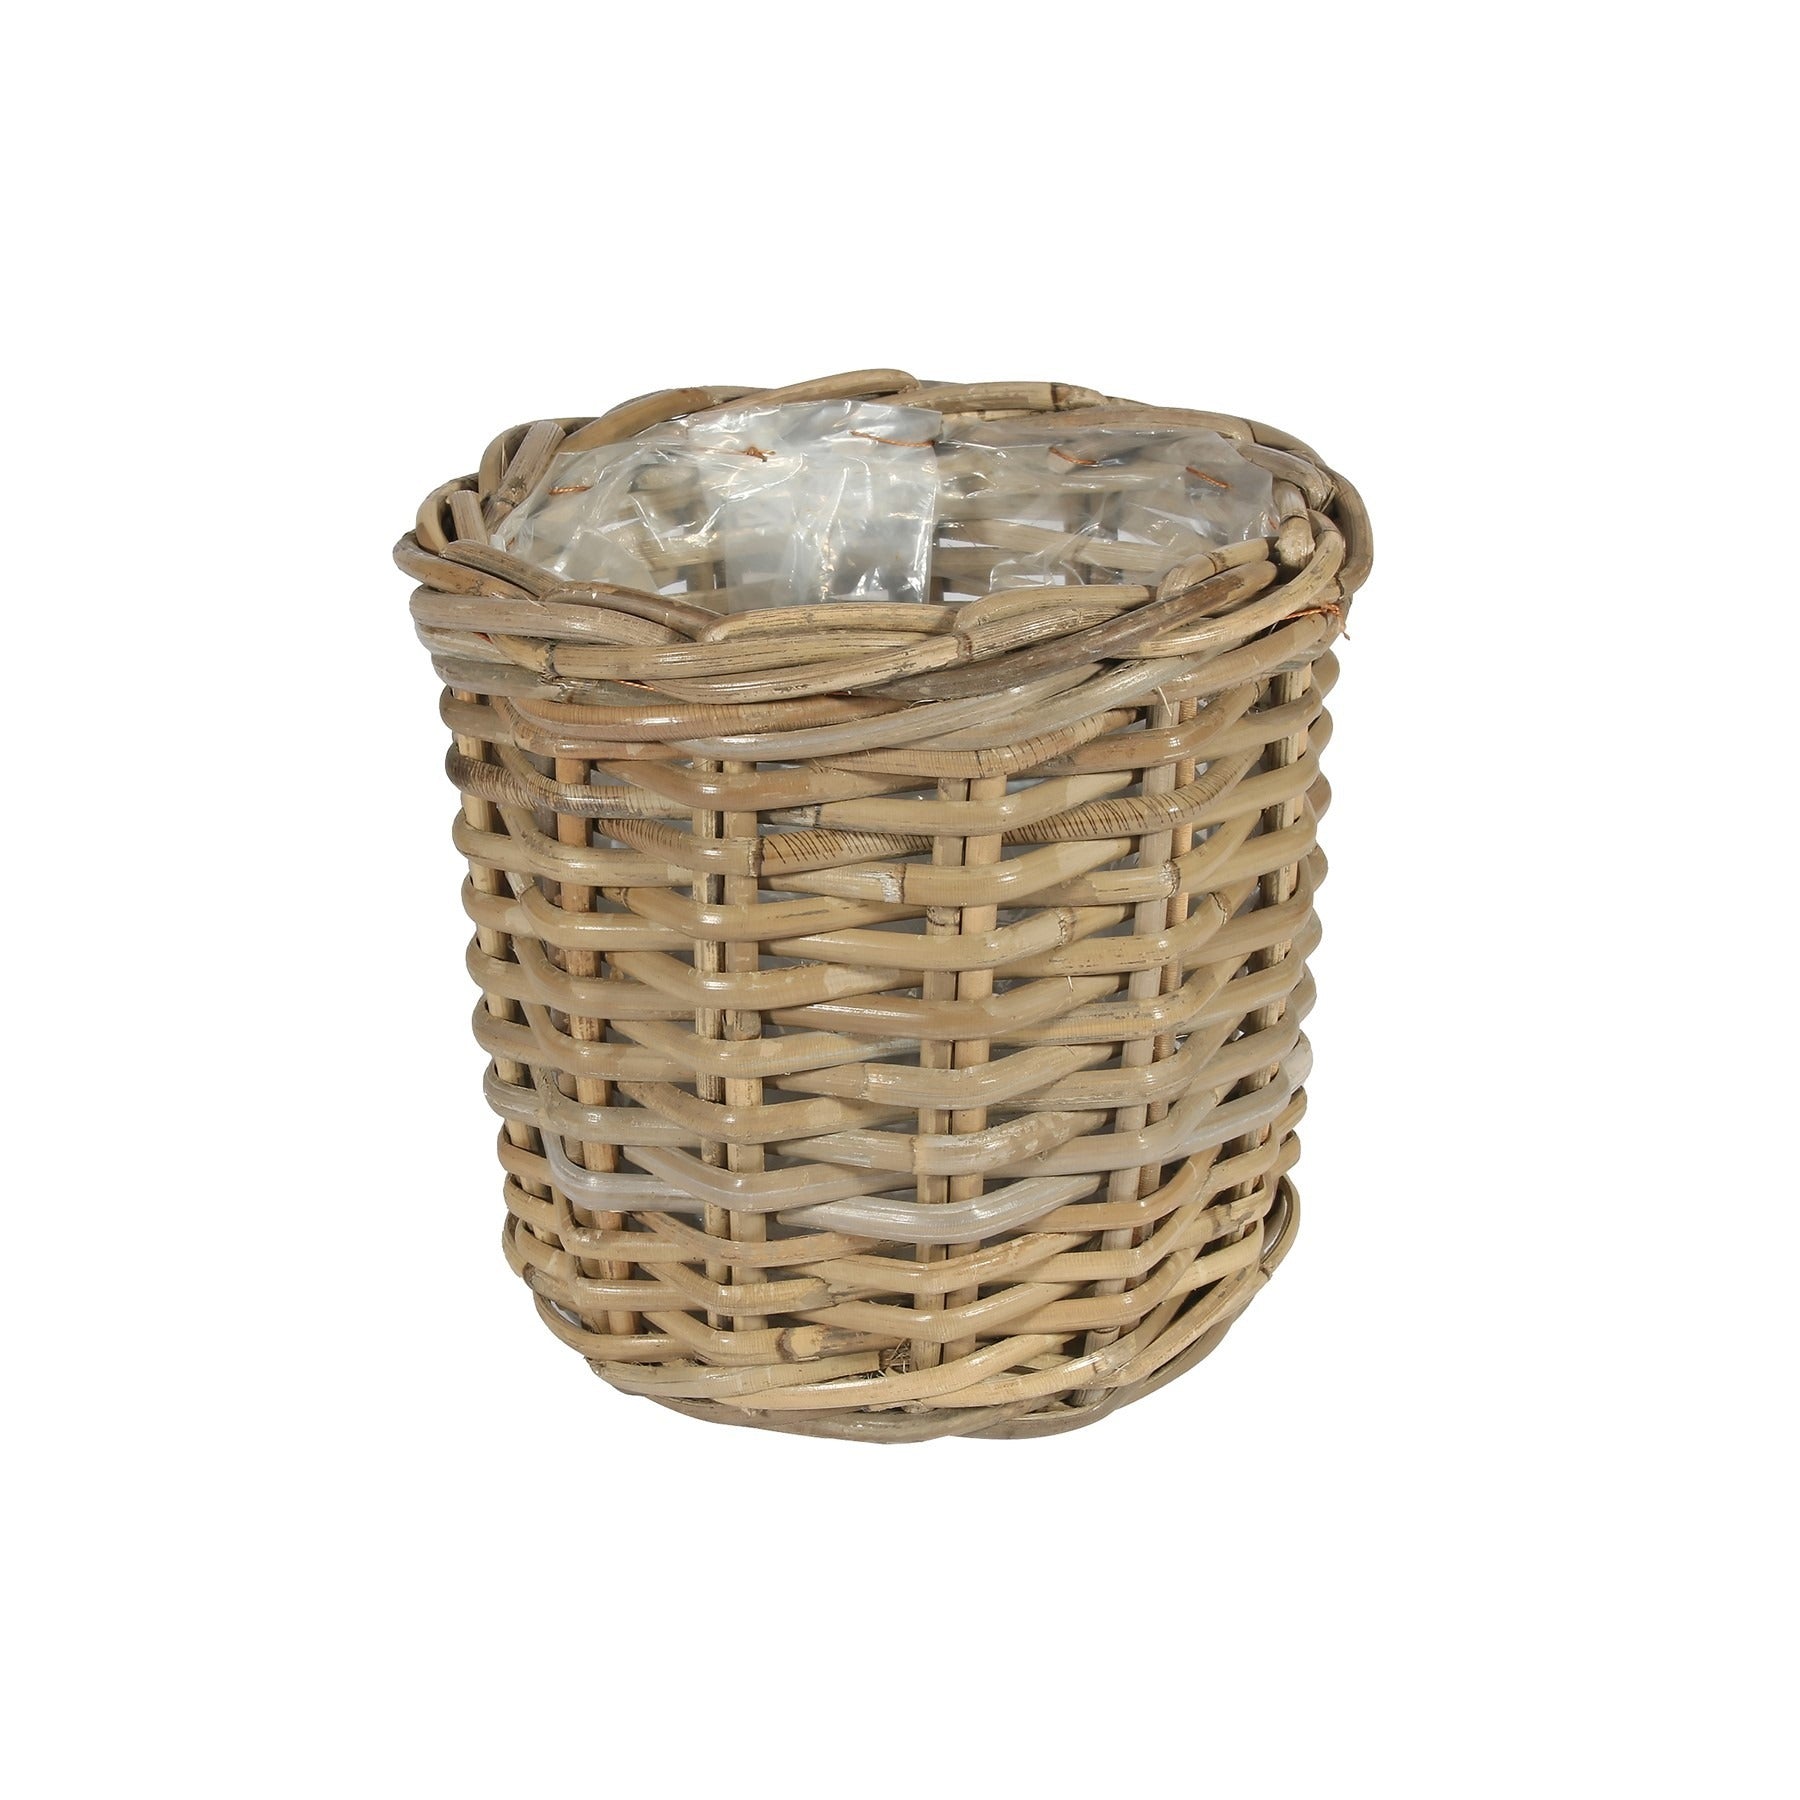 View Medium Round Basket with Liner information